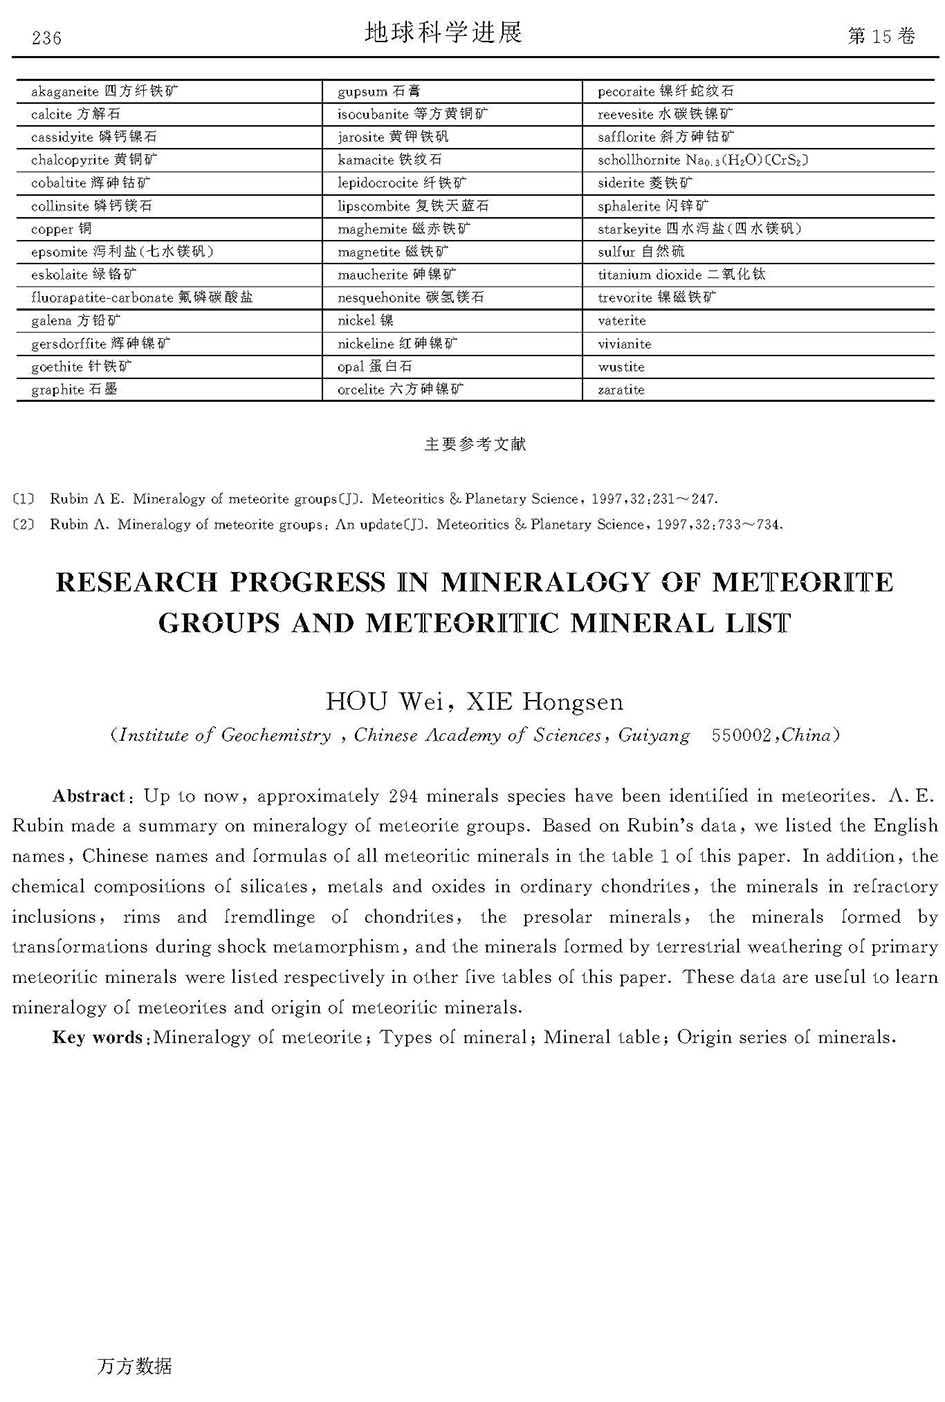 陨石矿物种类的研究进展和矿物表_页面_9.jpg